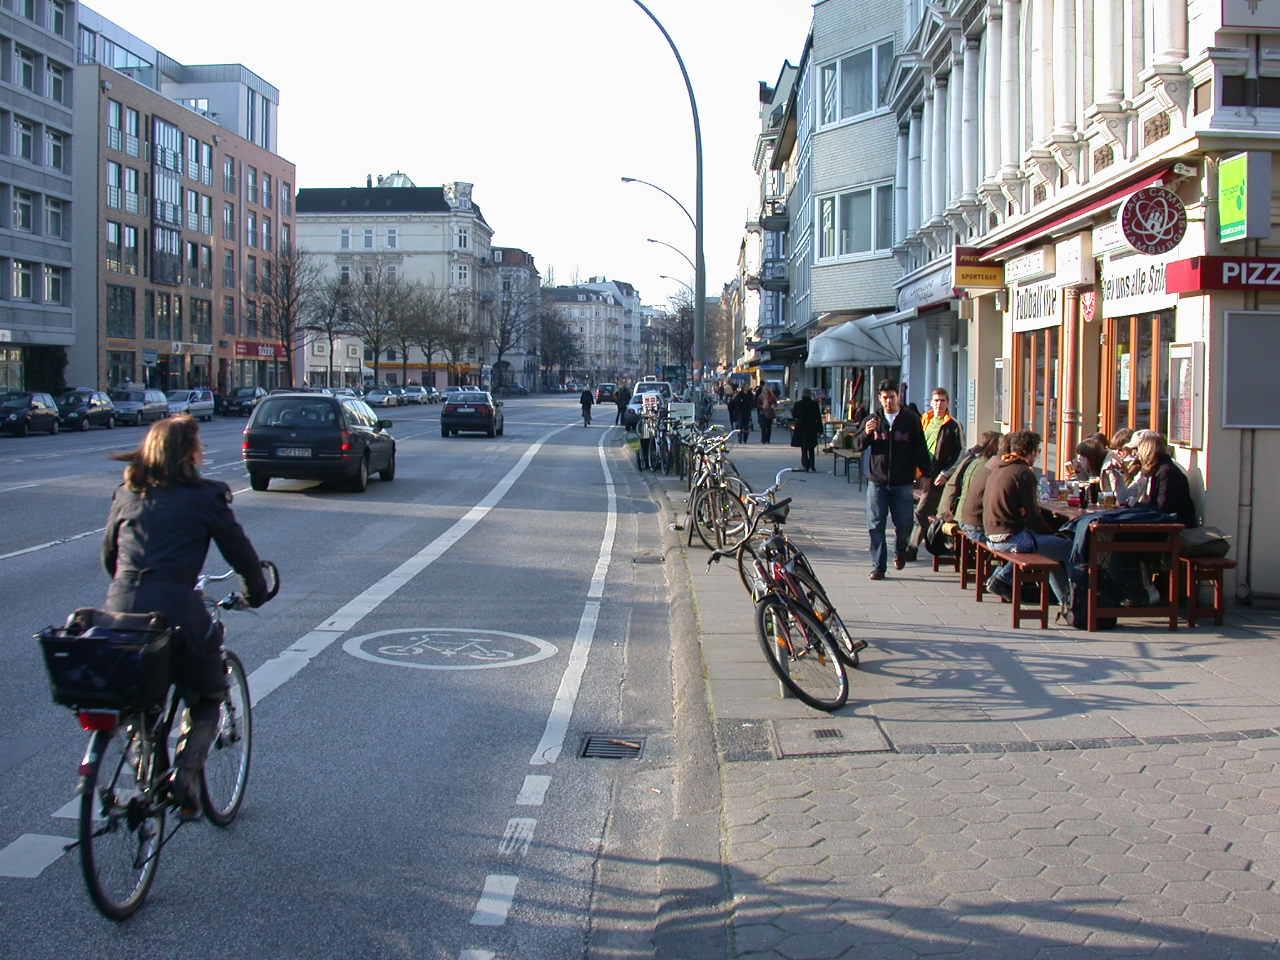 Exkurs: Radfahrstreifen Radfahrstreifen Vorteile für Fußgänger keine Gehweg-Konflikte Vorteile für Rad- und Autofahrer: Sichere Führung Weniger